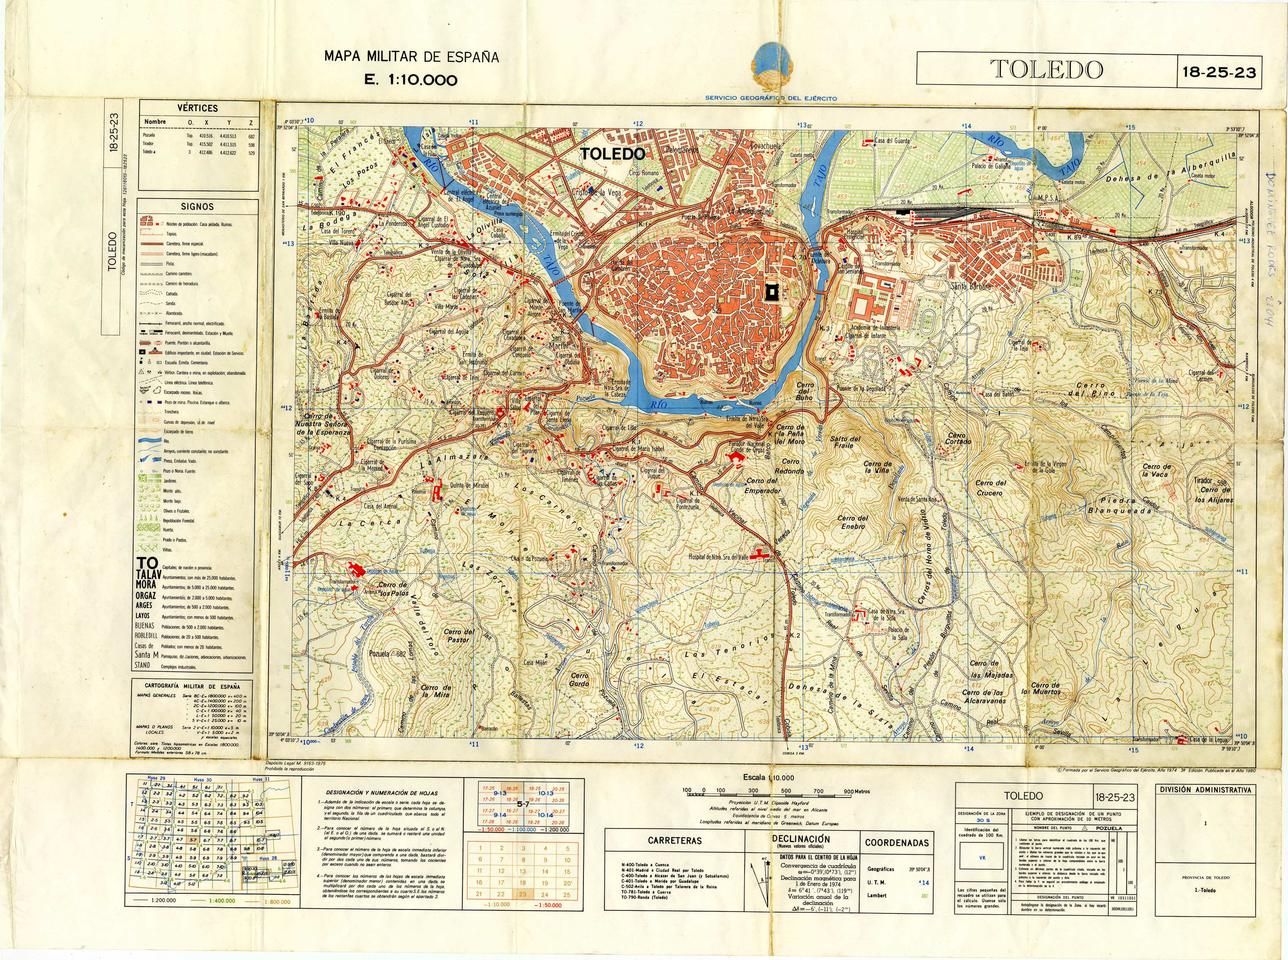 Mapa militar de España : Toledo 18-25-23 / formado por el Servicio Geográfico del Ejército.-. [Imagen]